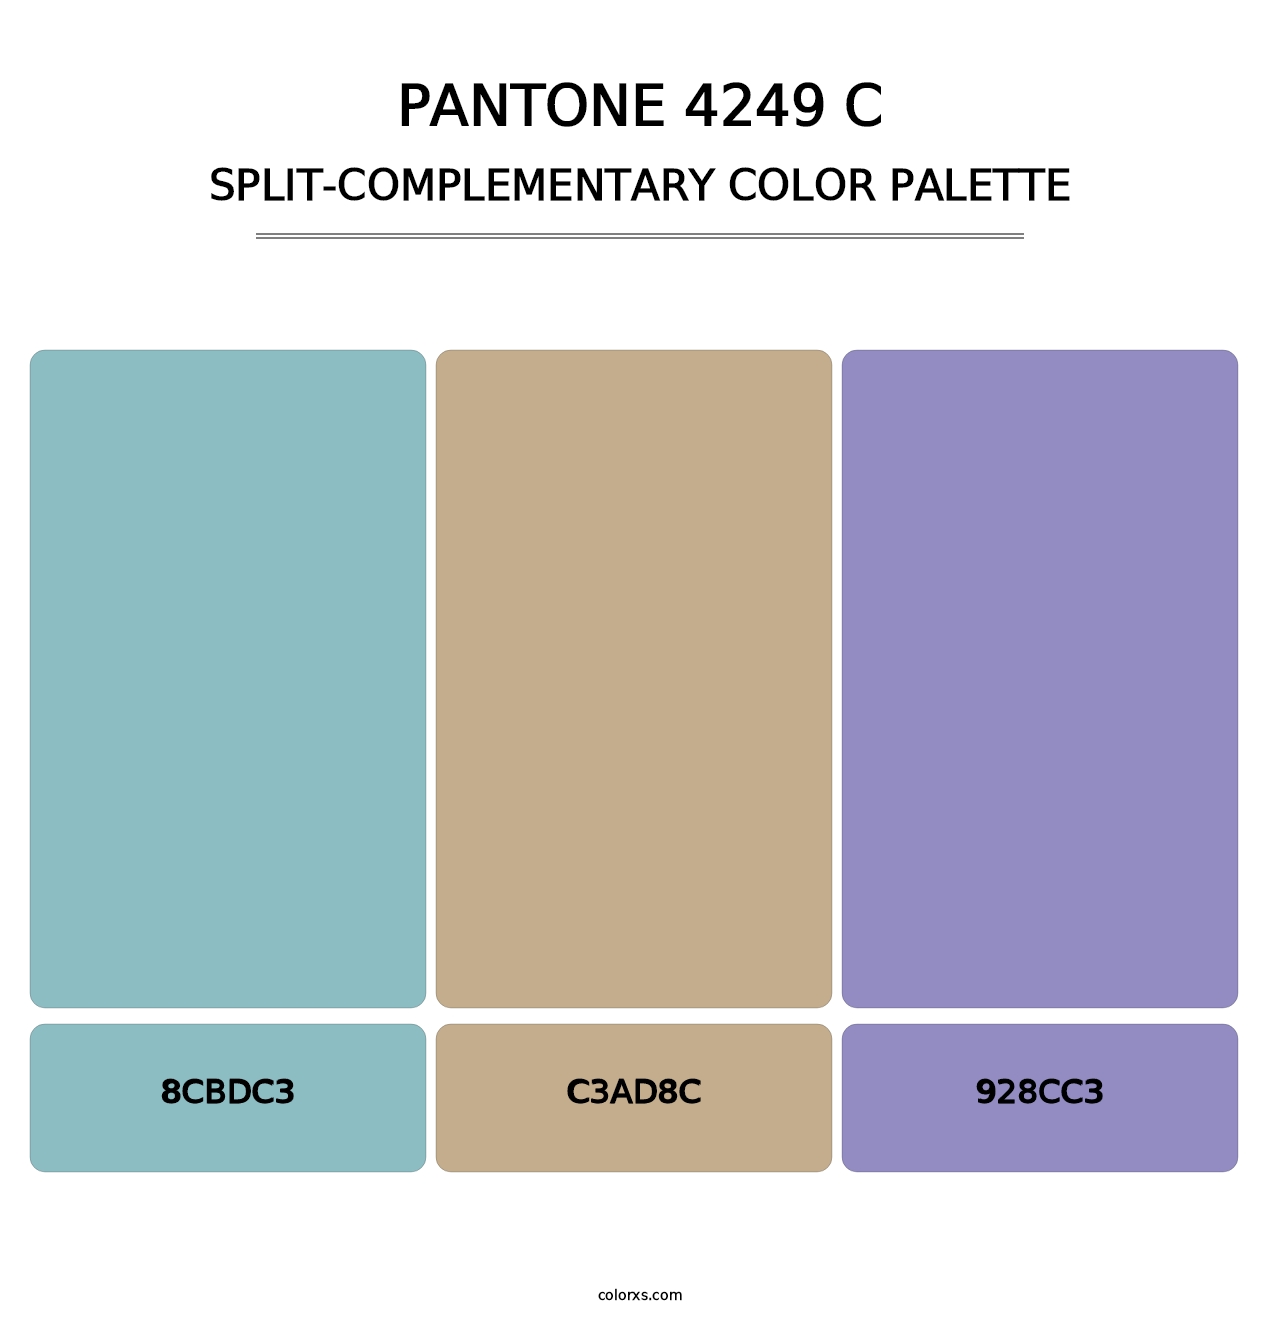 PANTONE 4249 C - Split-Complementary Color Palette